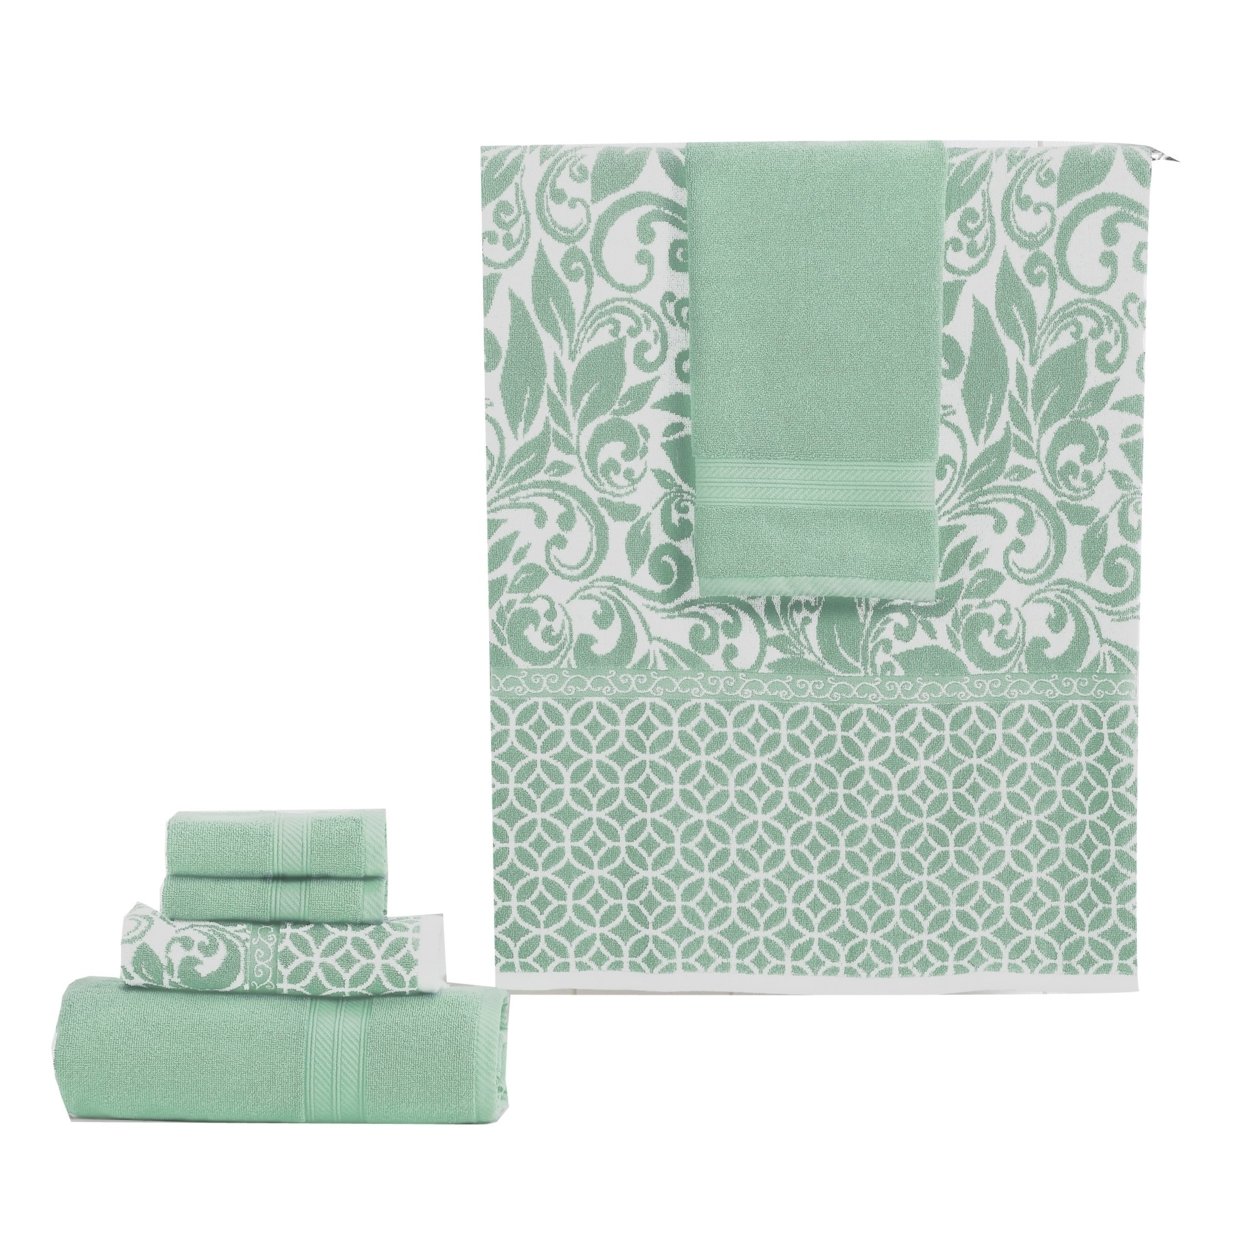 Bev Modern 6 Piece Cotton Towel Set, Jacquard Filigree Pattern, Sage Green- Saltoro Sherpi